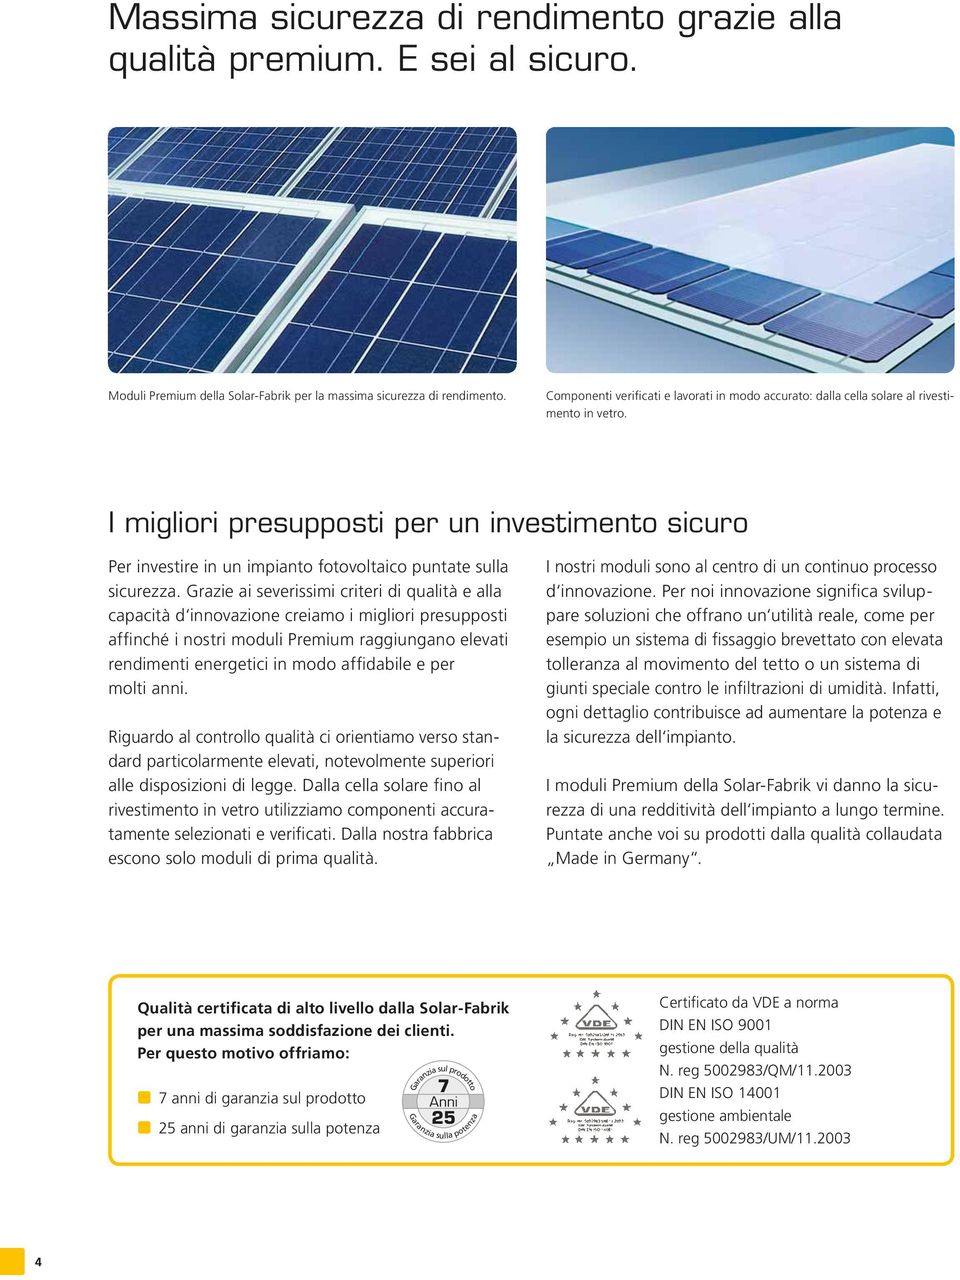 I migliori presupposti per un investimento sicuro Per investire in un impianto fotovoltaico puntate sulla sicurezza.